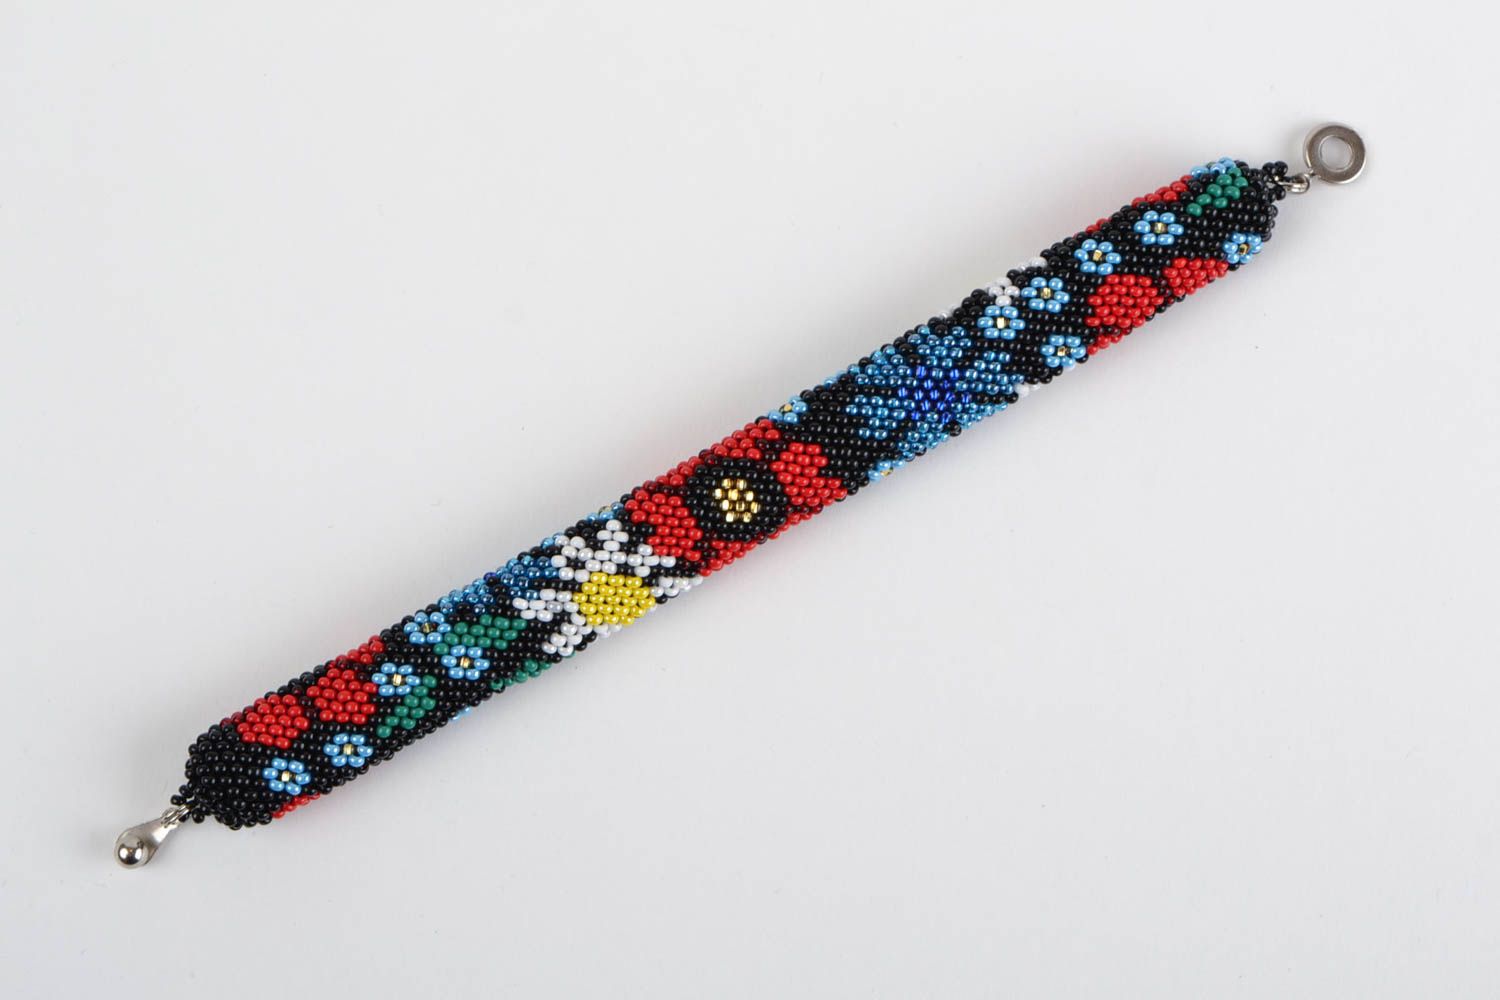 Цветочный браслет жгут из бисера ручной работы темный нарядный Полевые цветы фото 2